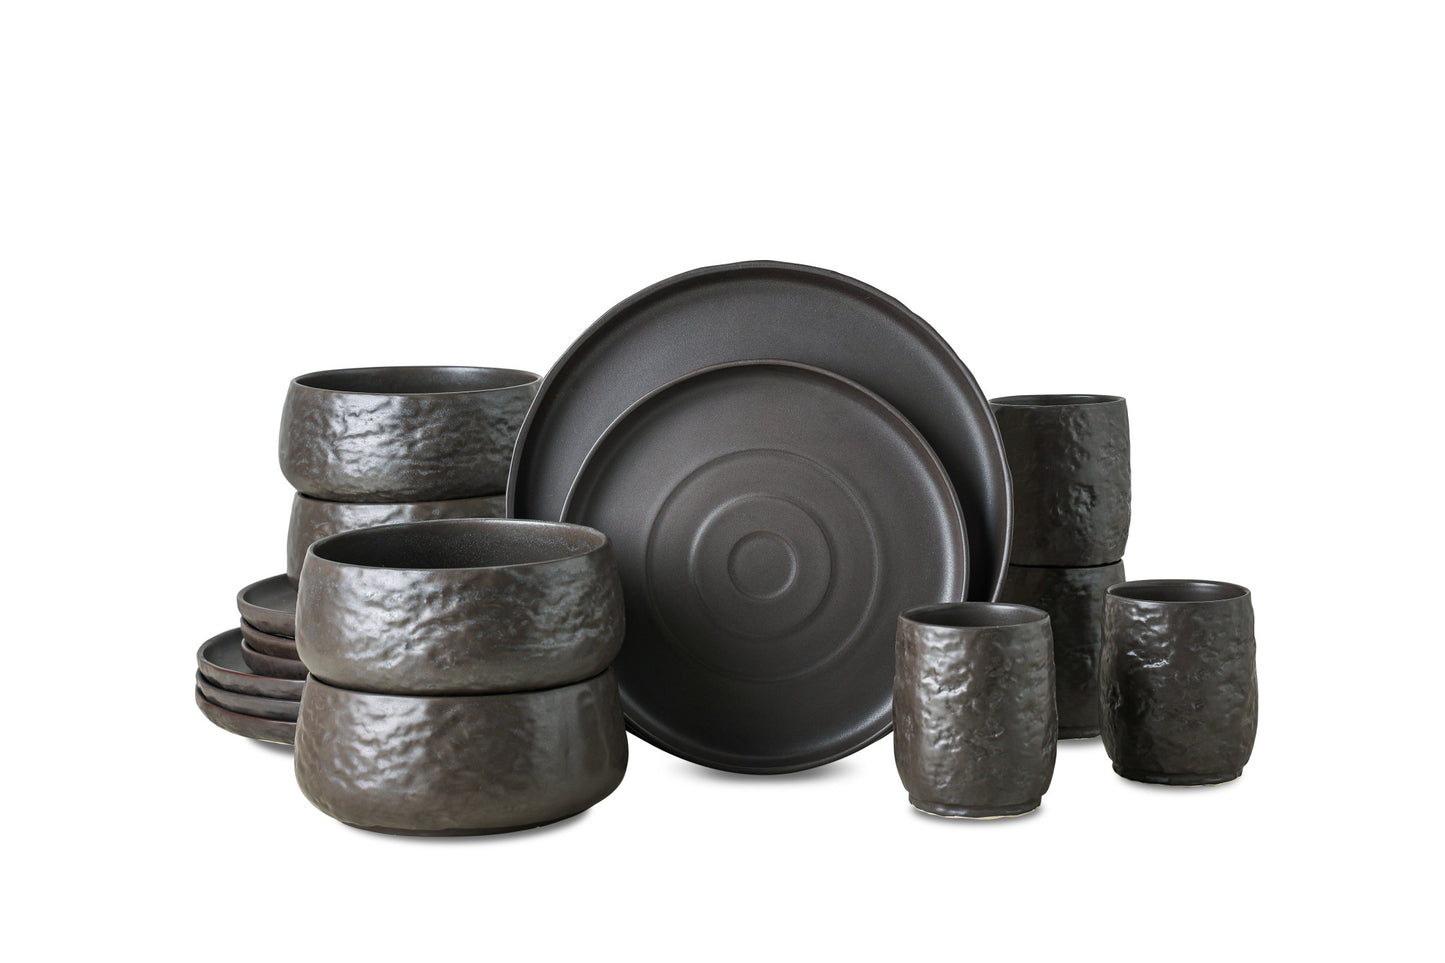 Shosai Stoneware Dinnerware Set - Black